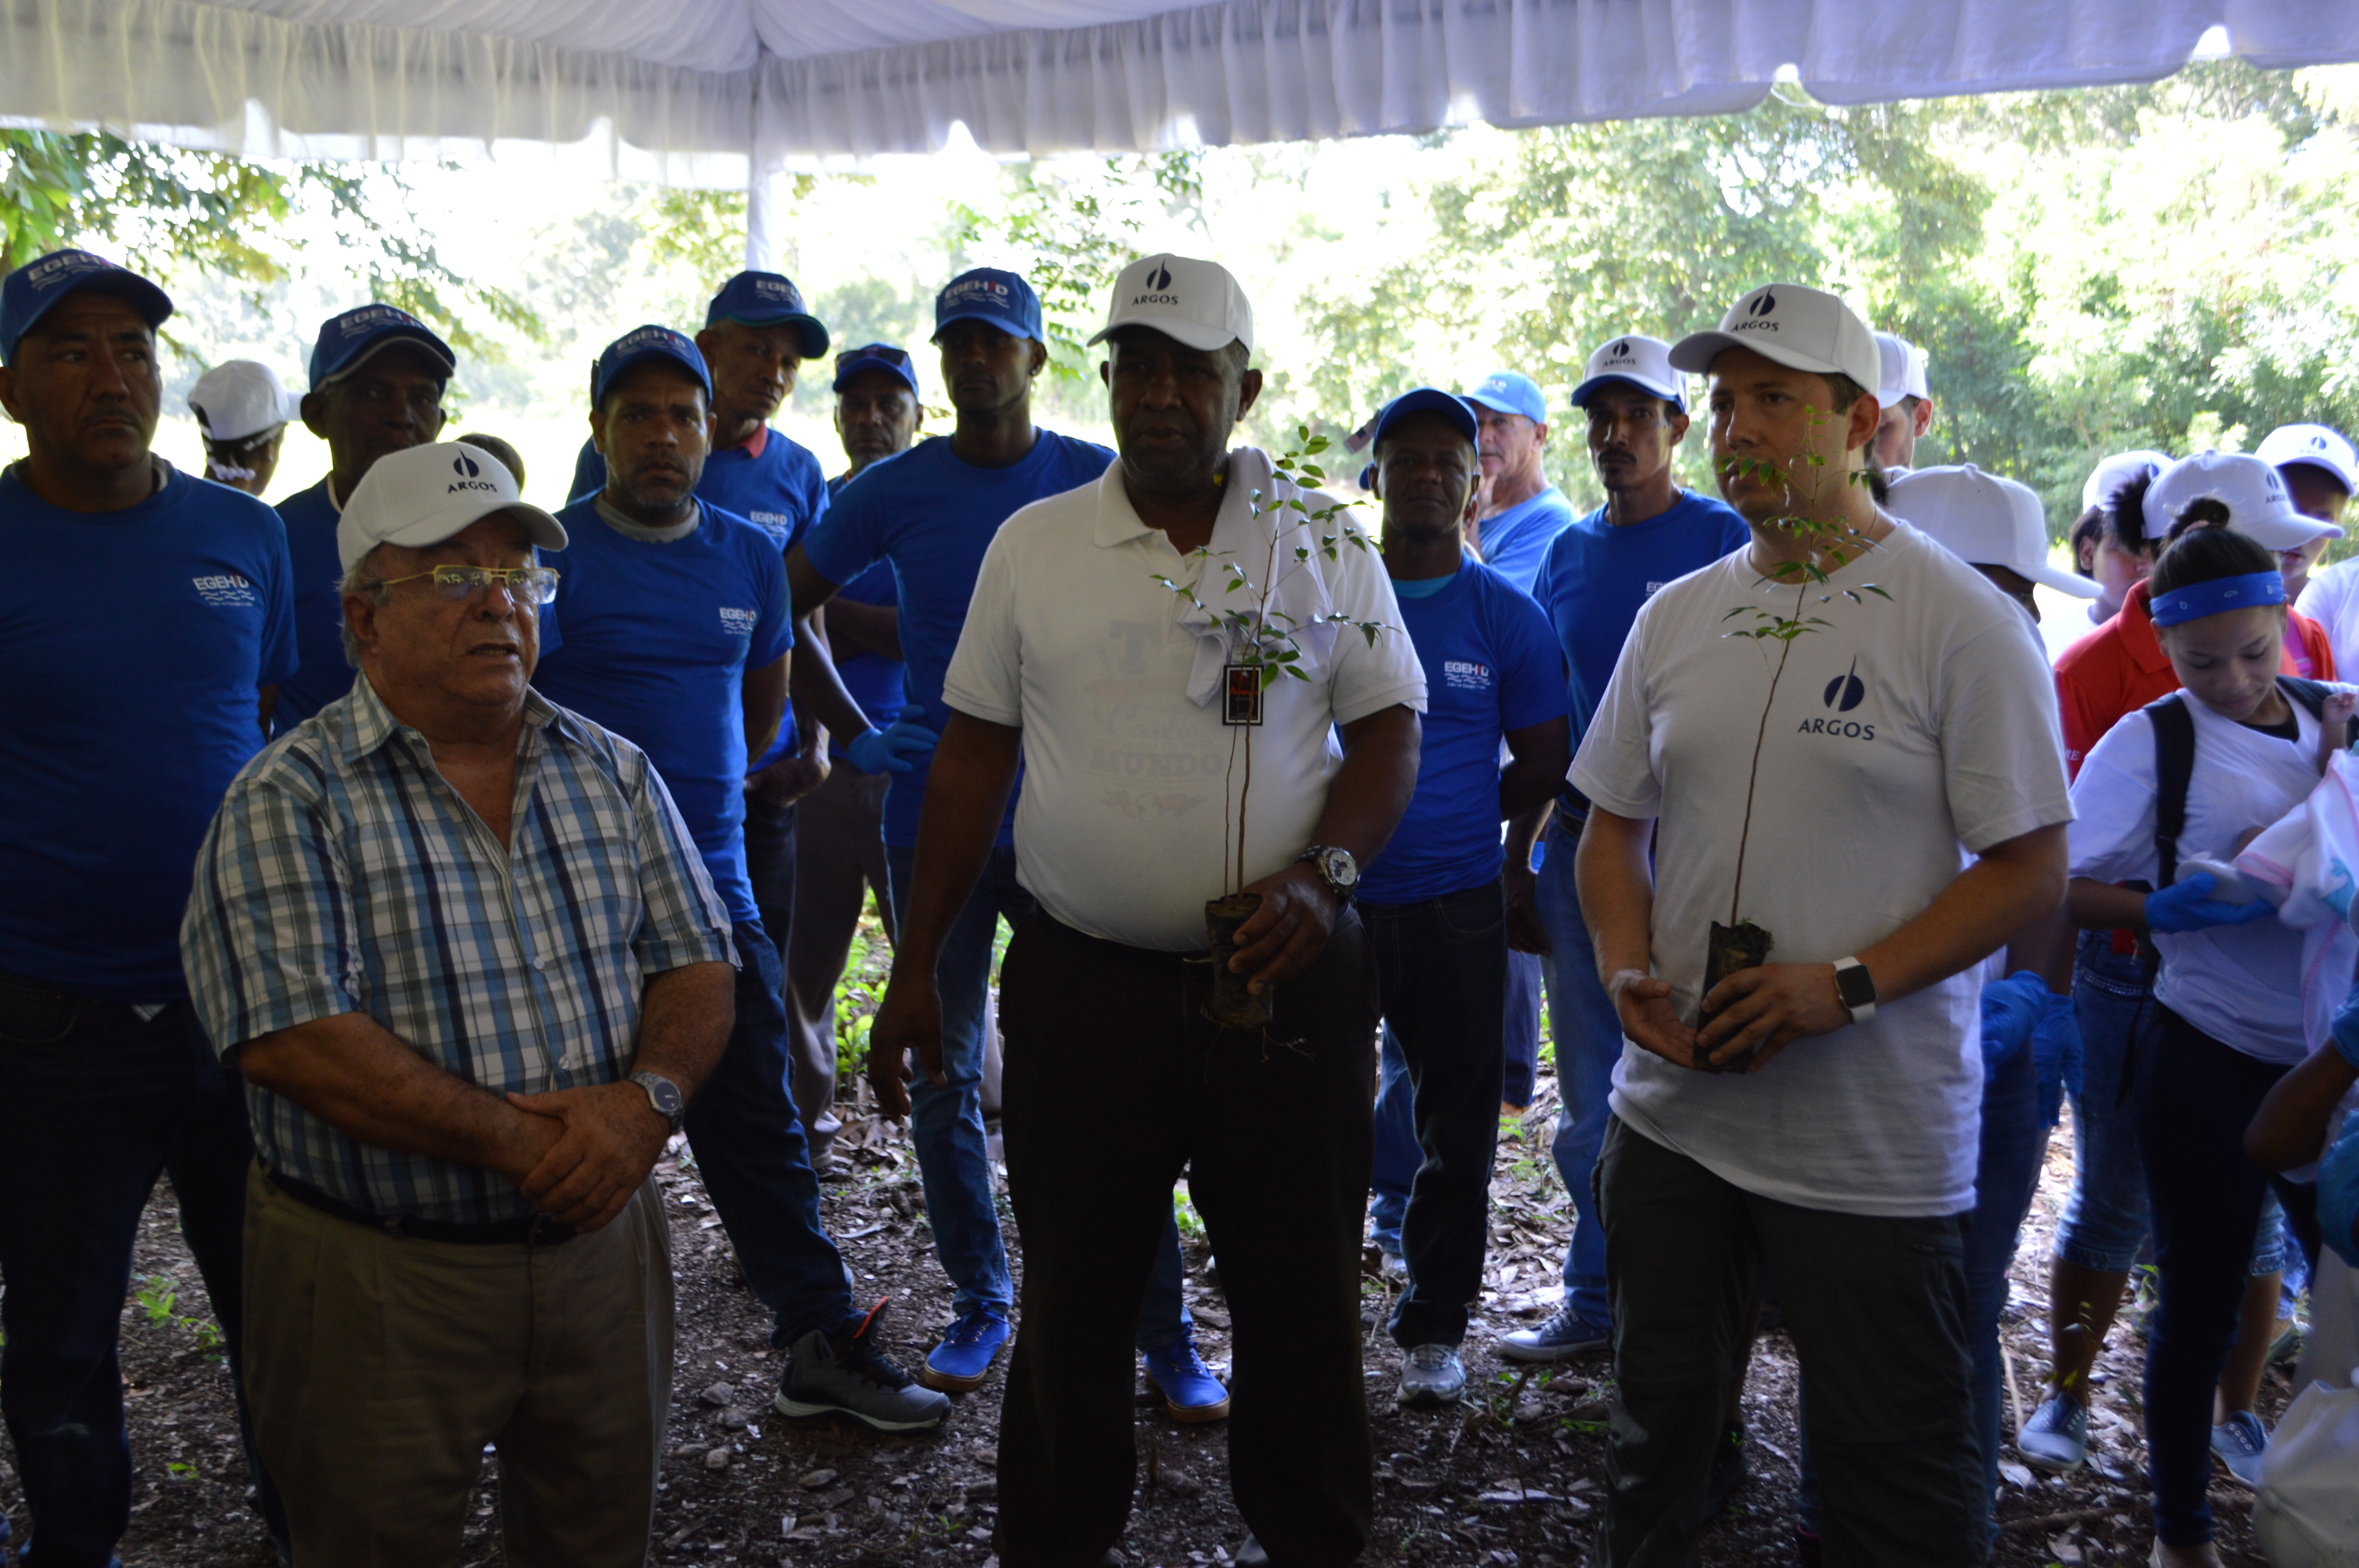  Argos Dominicana en jornada de reforestación como parte de compromiso de sostenibilidad